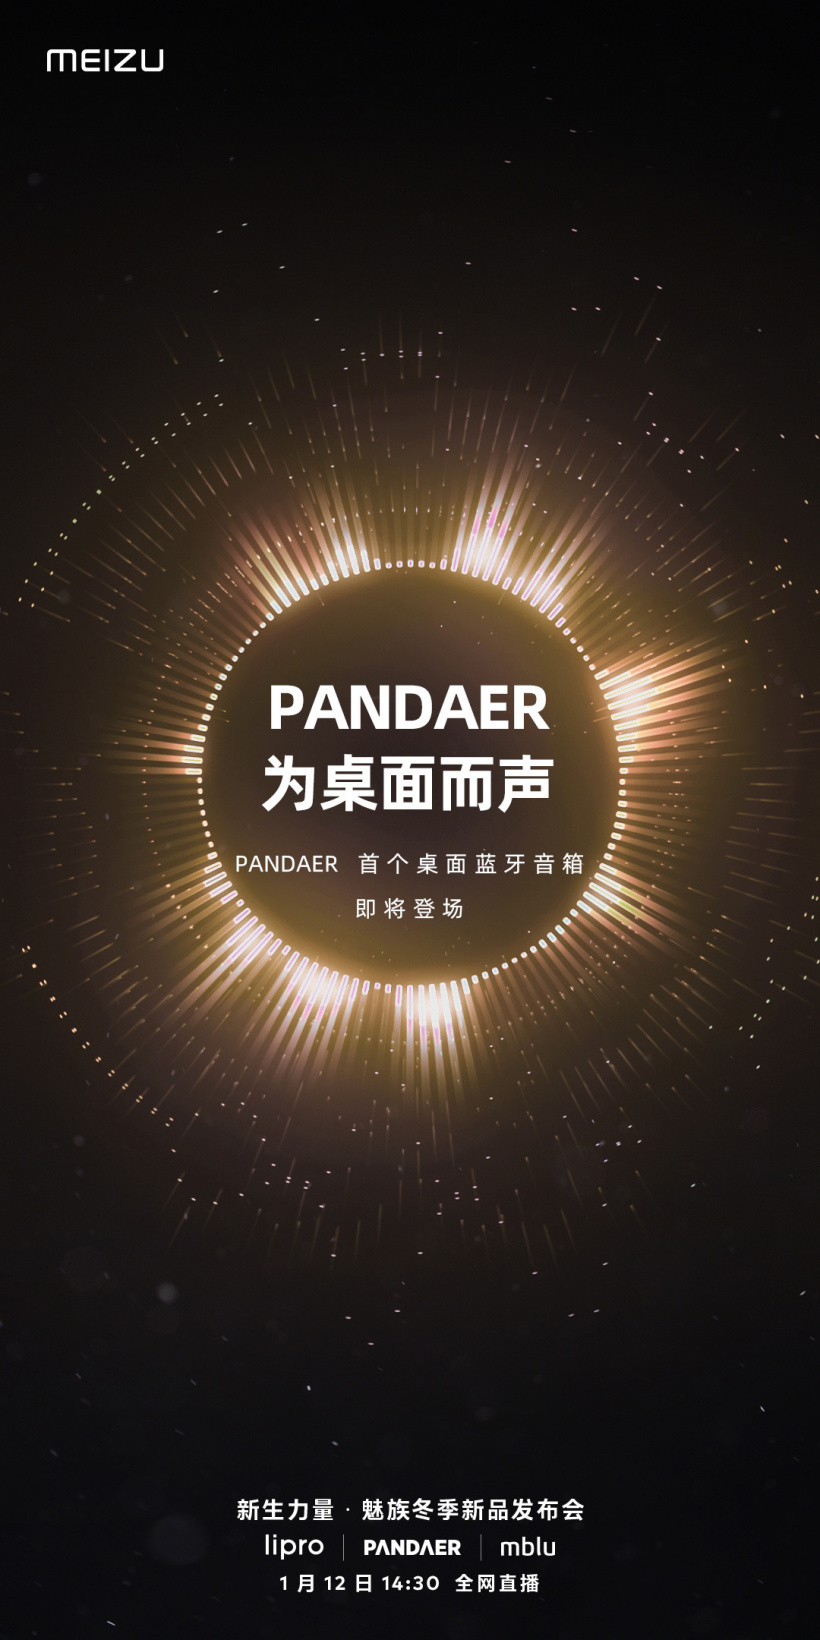 魅族 PANDAER 首个桌面蓝牙音箱官宣 1 月 12 日发布